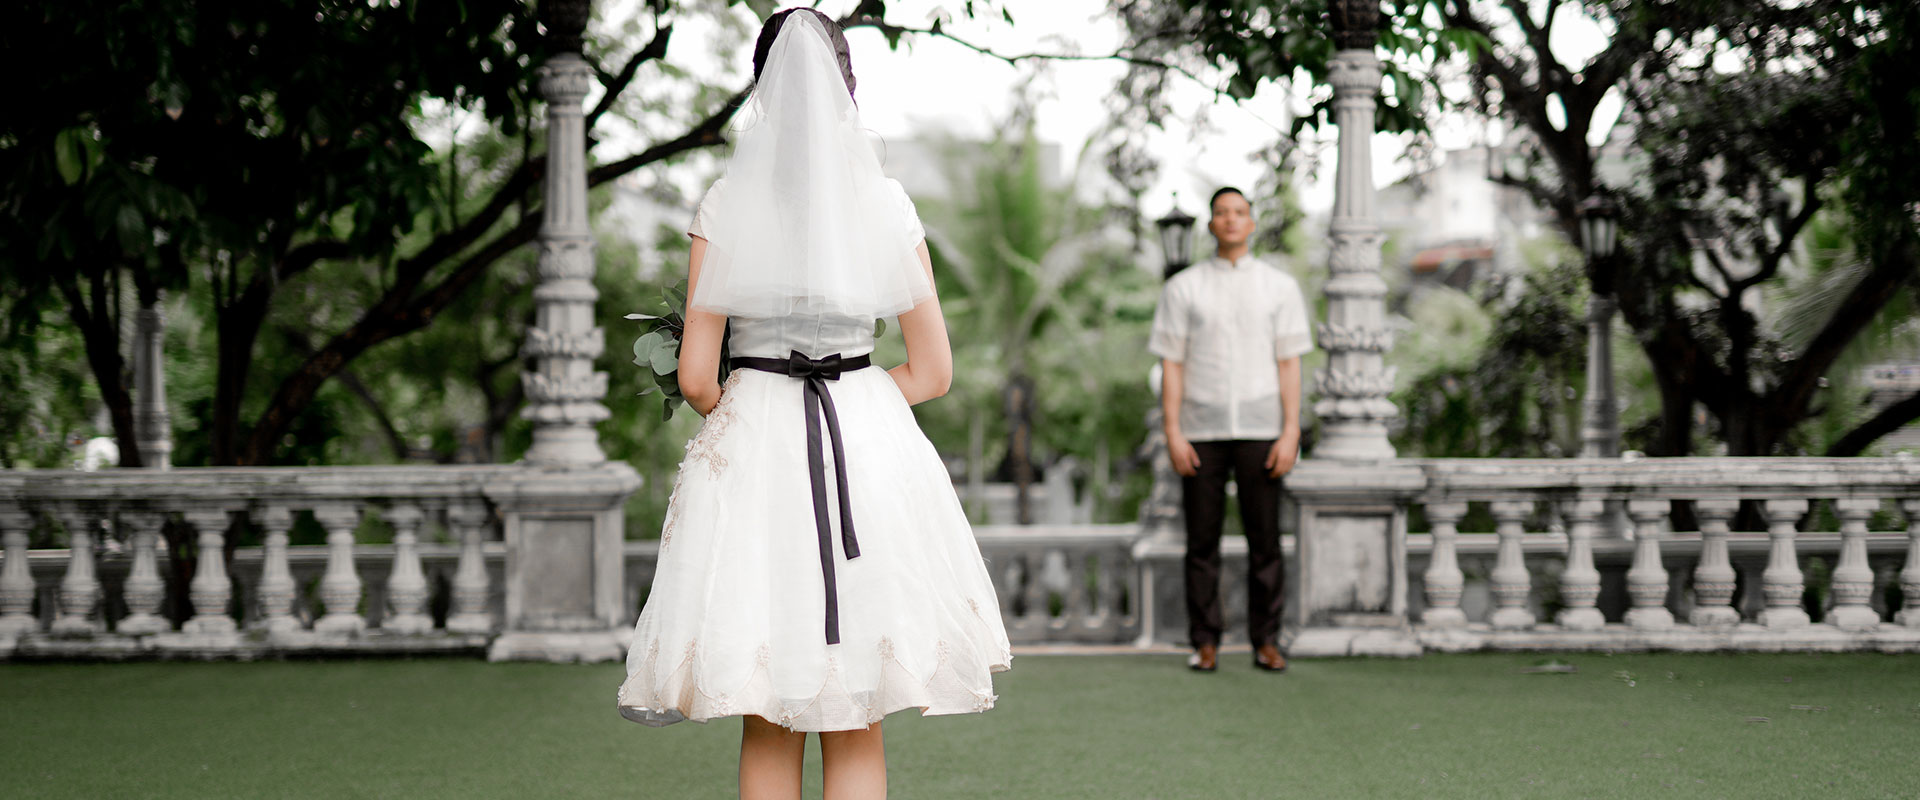 Thoughts Behind The Ultimate Modern Filipino Wedding Fantasy “Ang Muling El Bimbo”